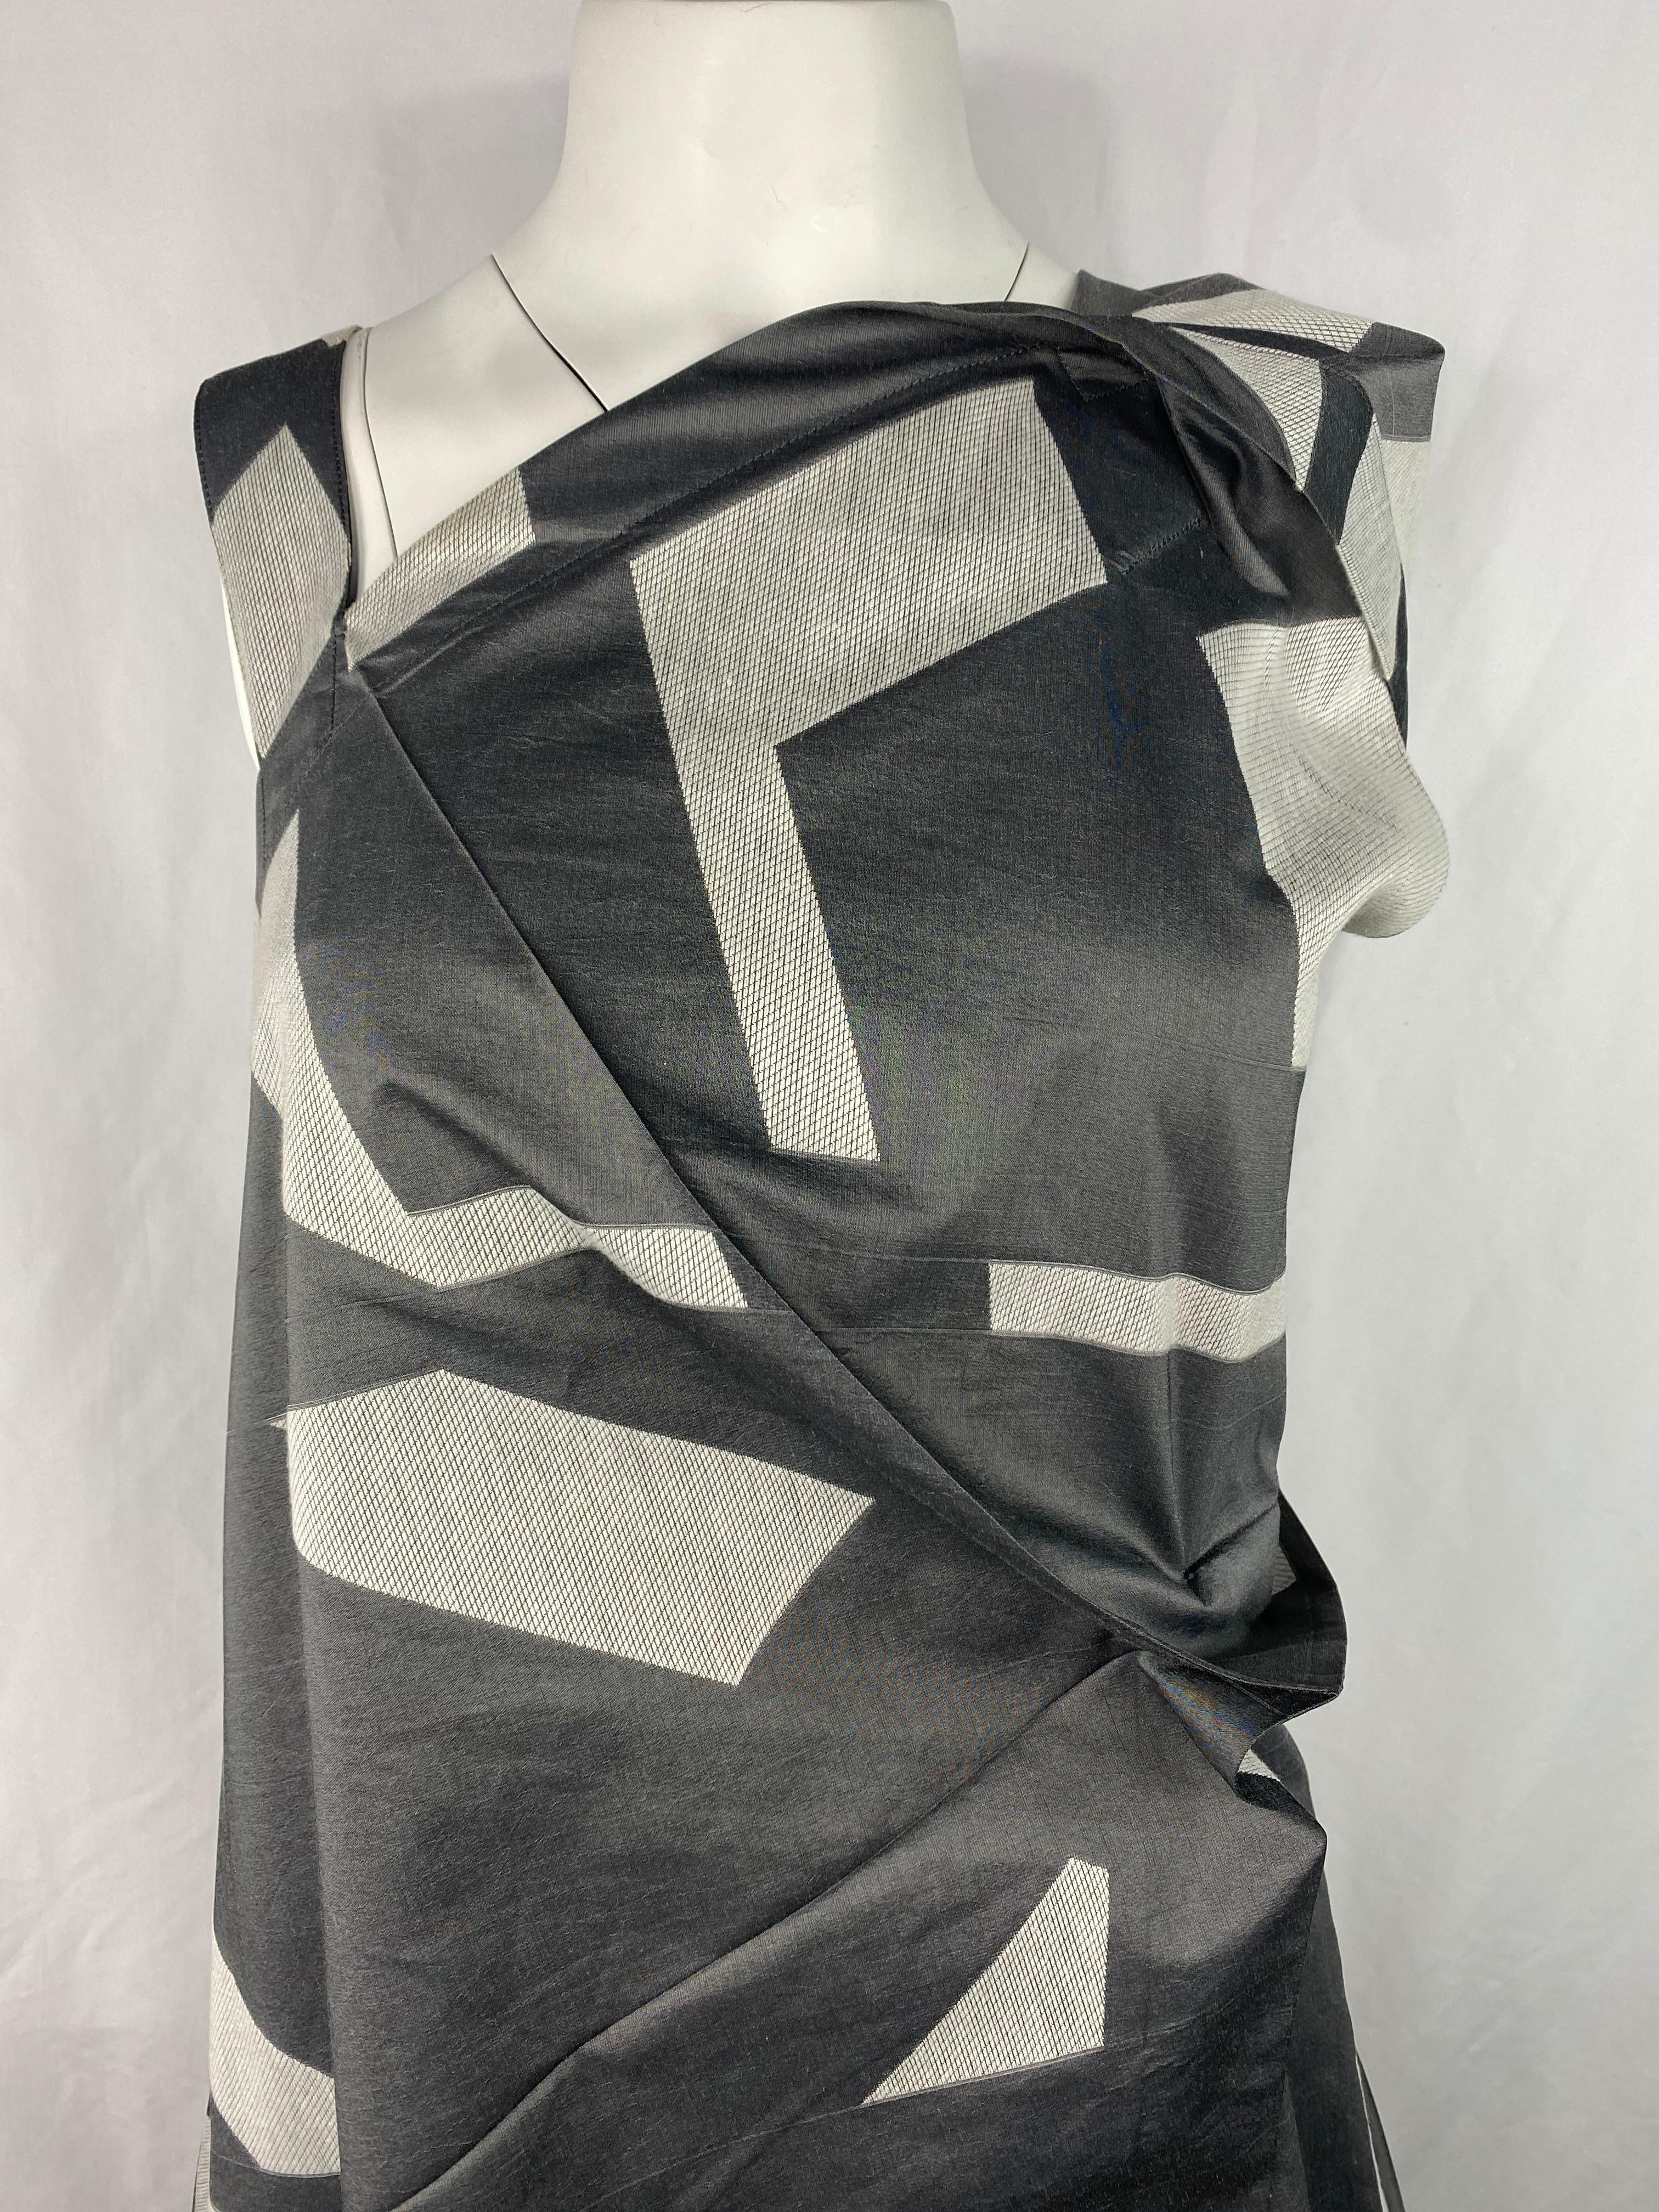 Einzelheiten zum Produkt:

Das Kleid hat ein graues und weißes geometrisches Muster mit asymmetrischem Design, Seitenverschluss und mittlerer Länge.